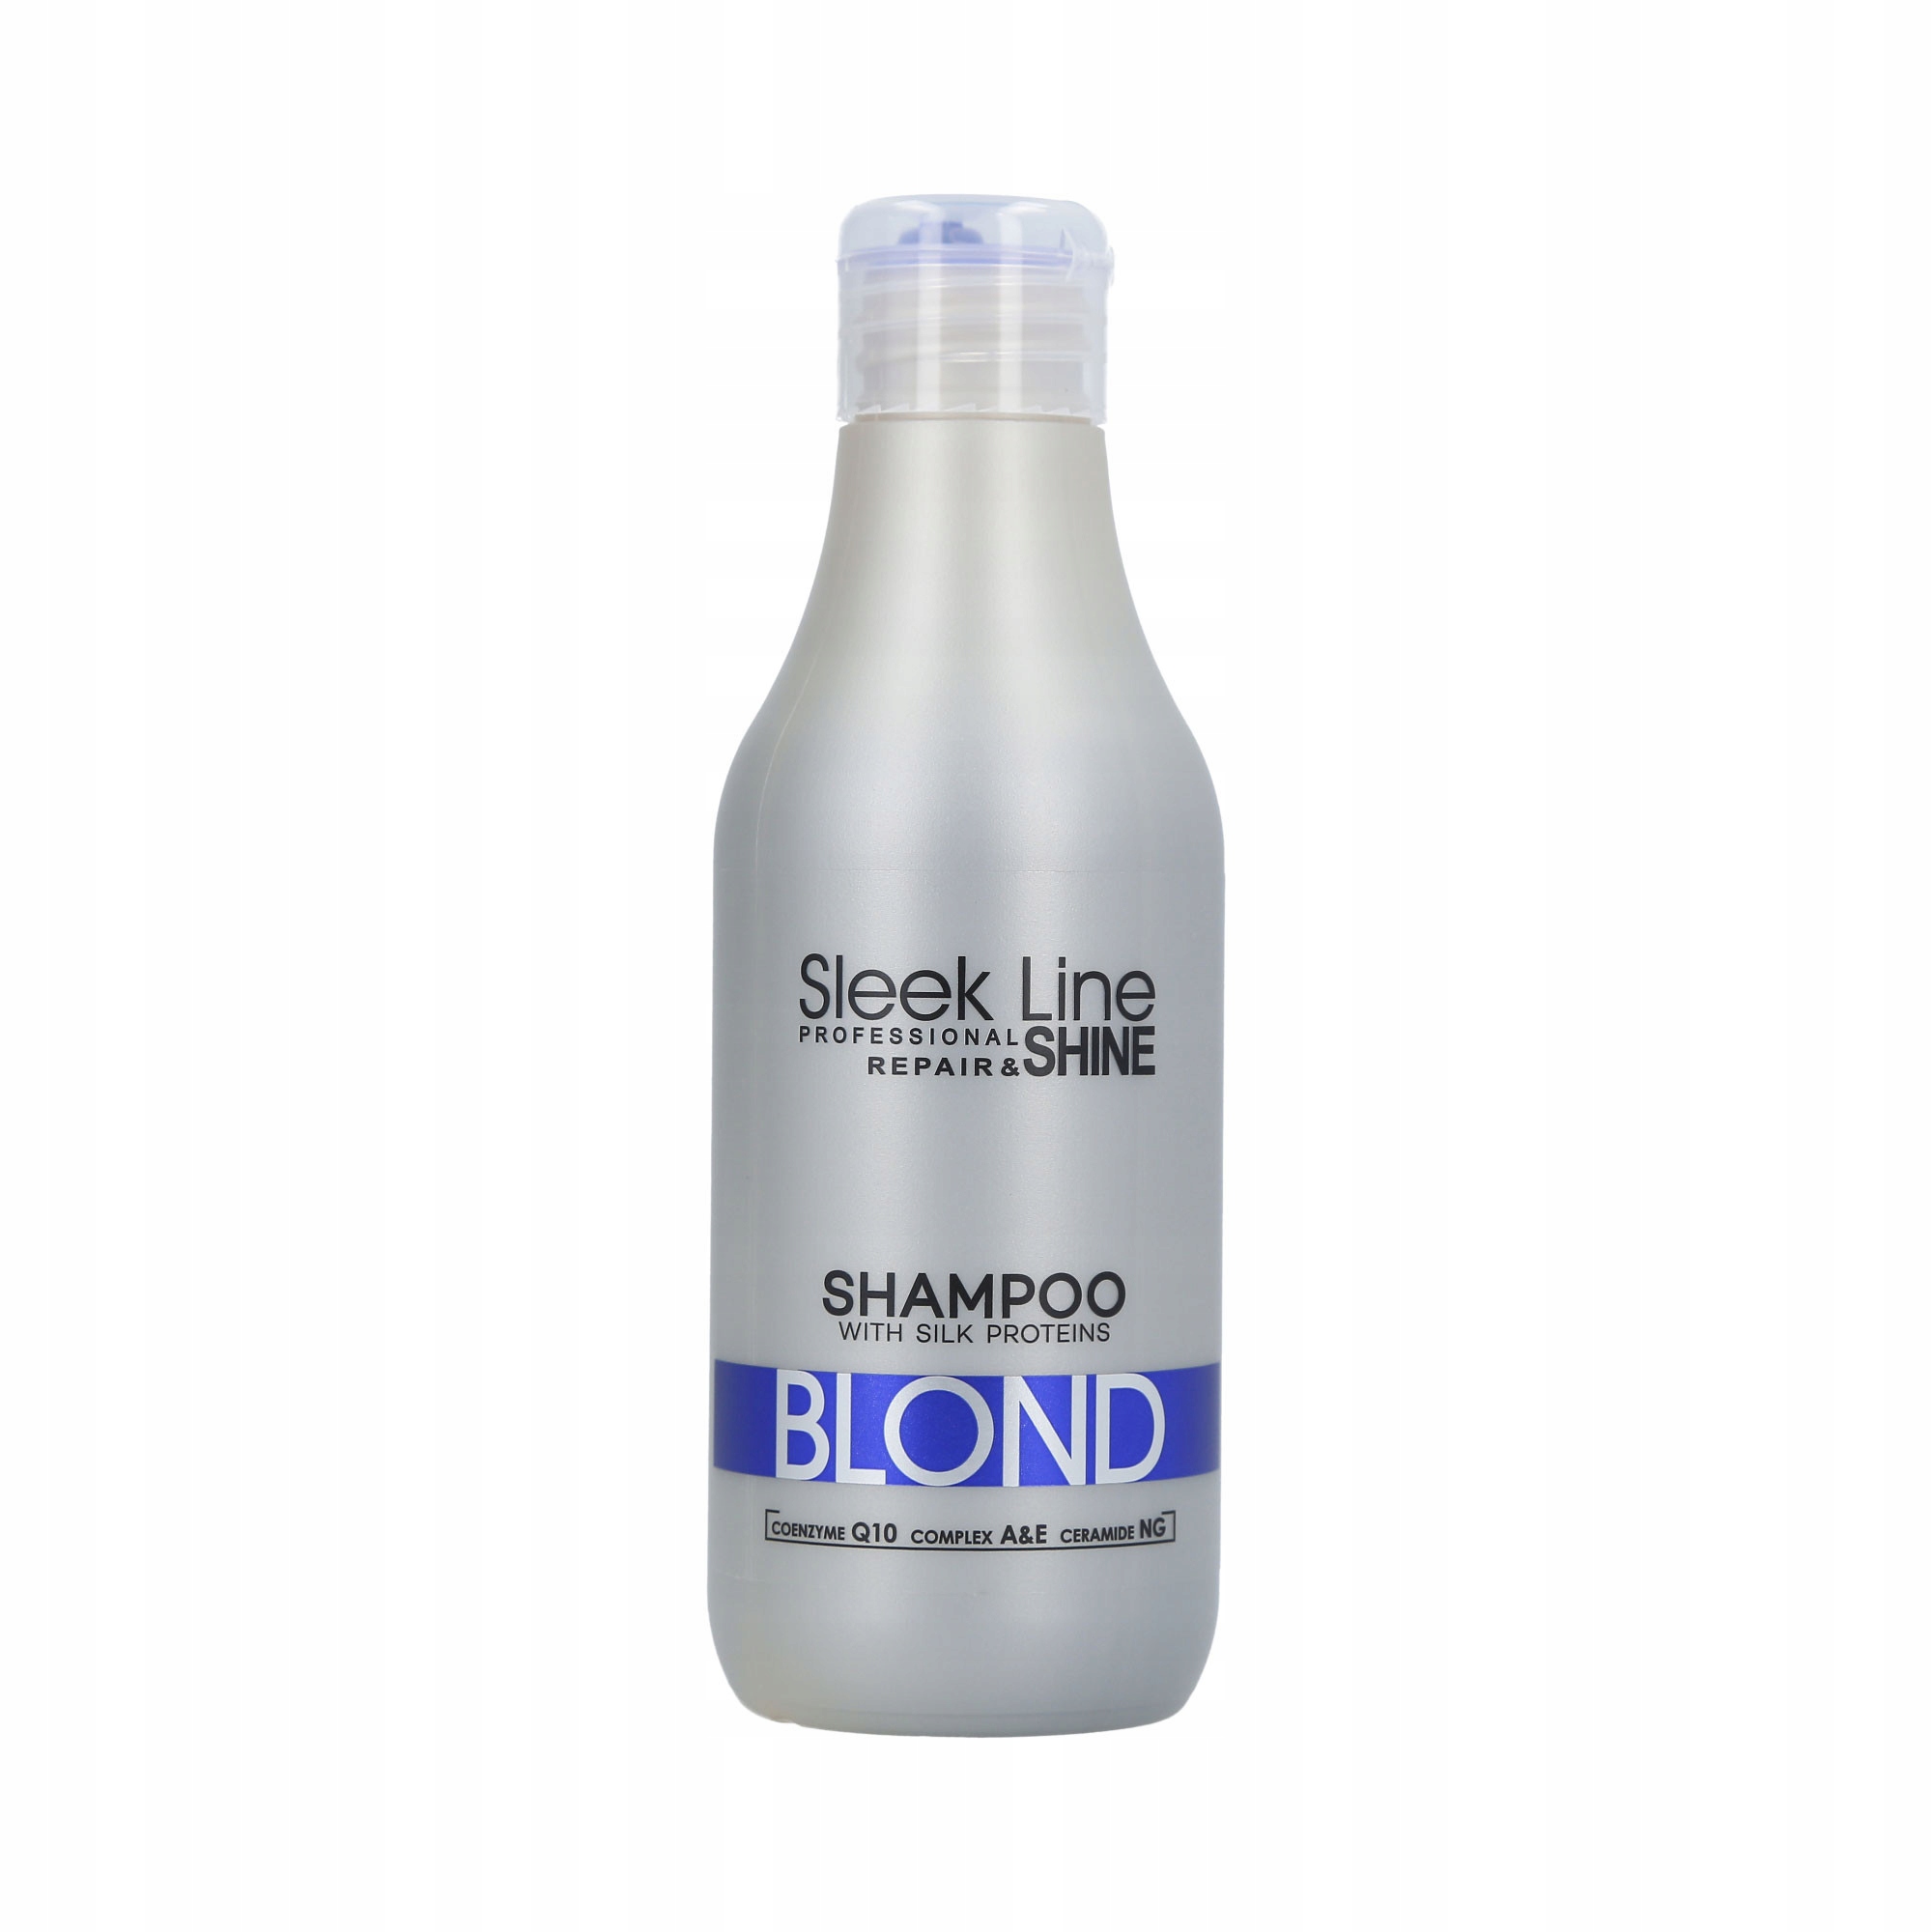 stapiz szampon z jedwabiem sleek line blond